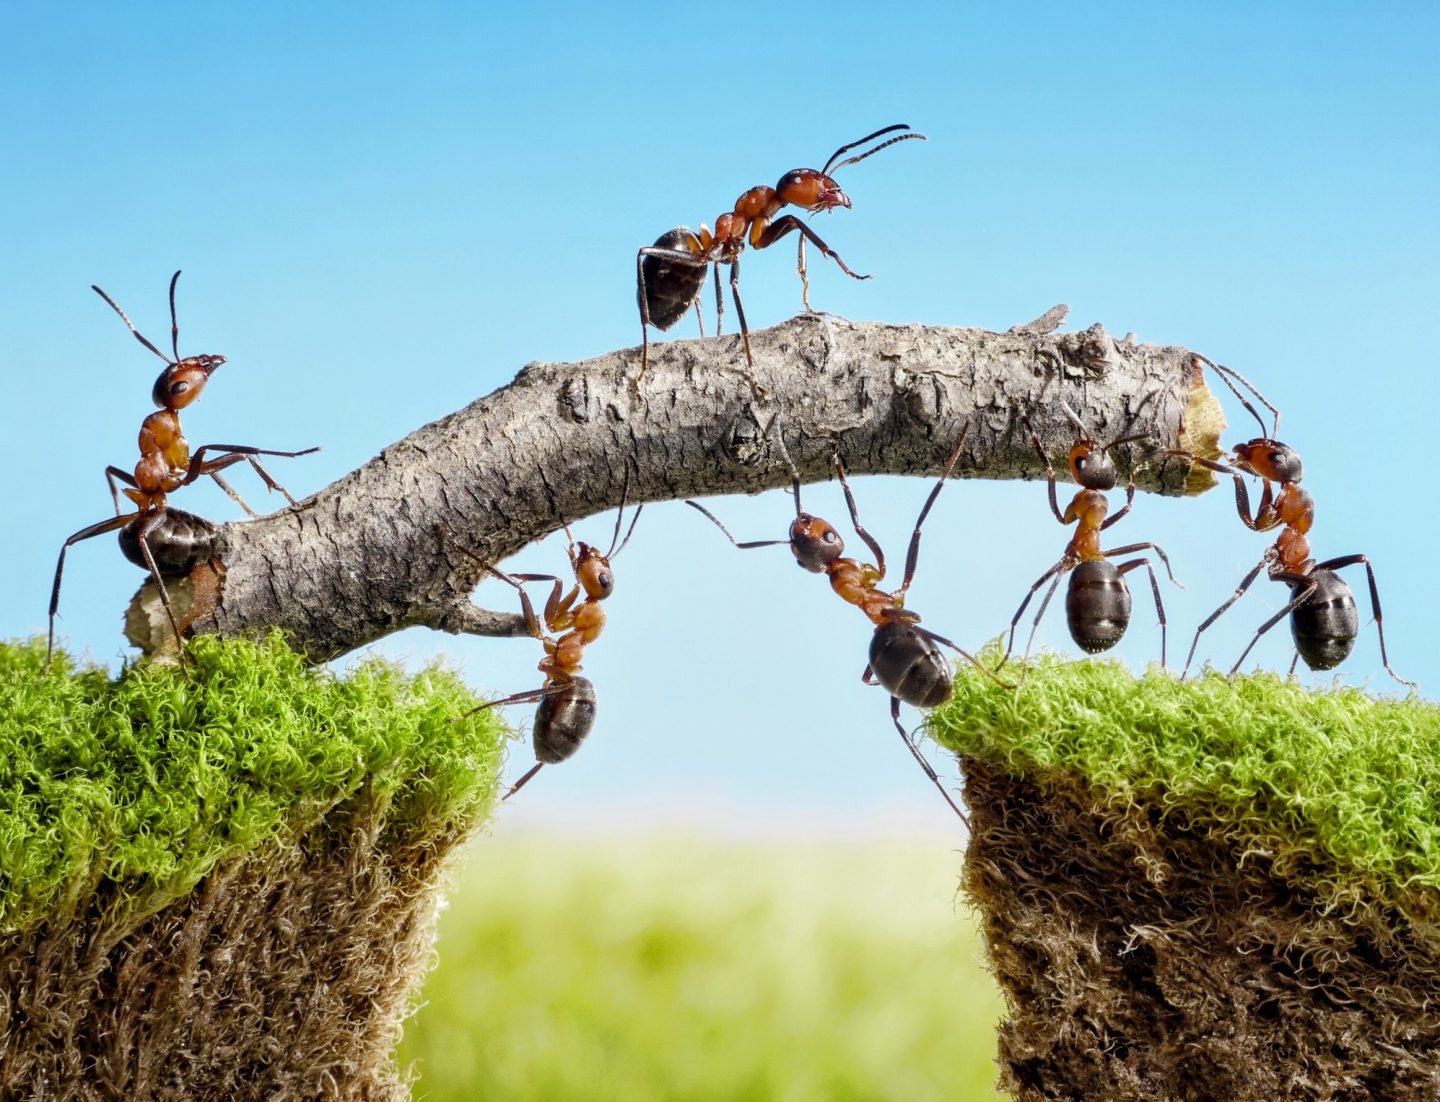 تتصرف مستعمرات النمل مثل الدماغ البشري عند اتخاذ القرارات!